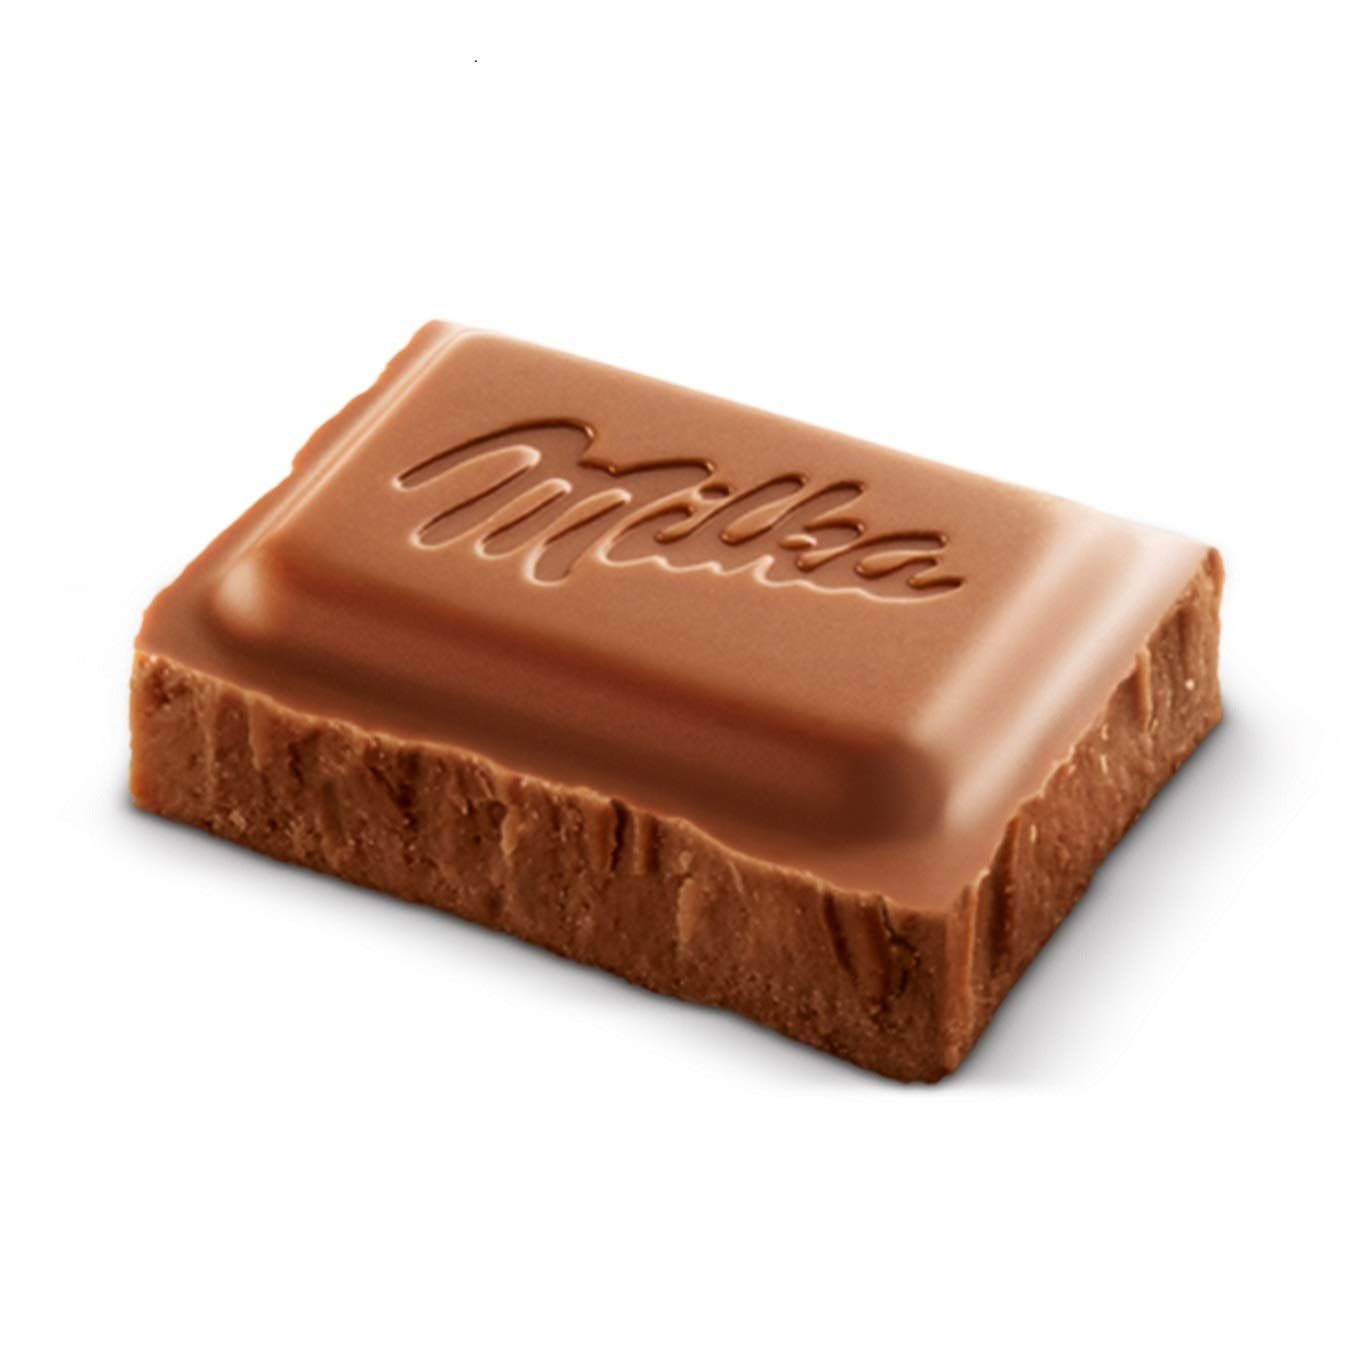 100g Tafel, Zartschmelzende Milka Alpenmilch Tafel Schokolade